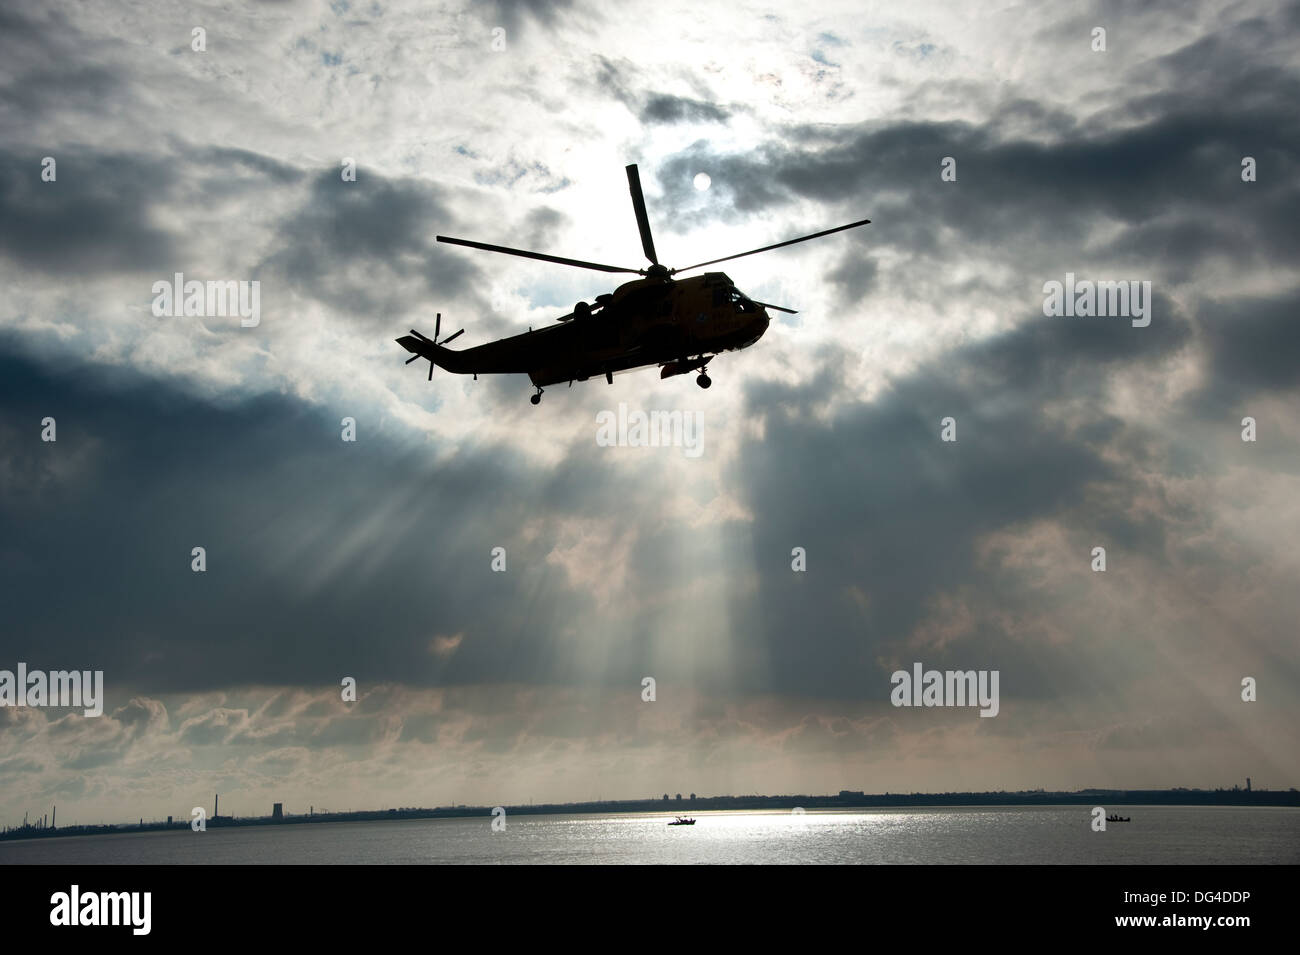 Seaking Hubschrauber Rettung dunkle Vorahnung Himmel Stockfoto